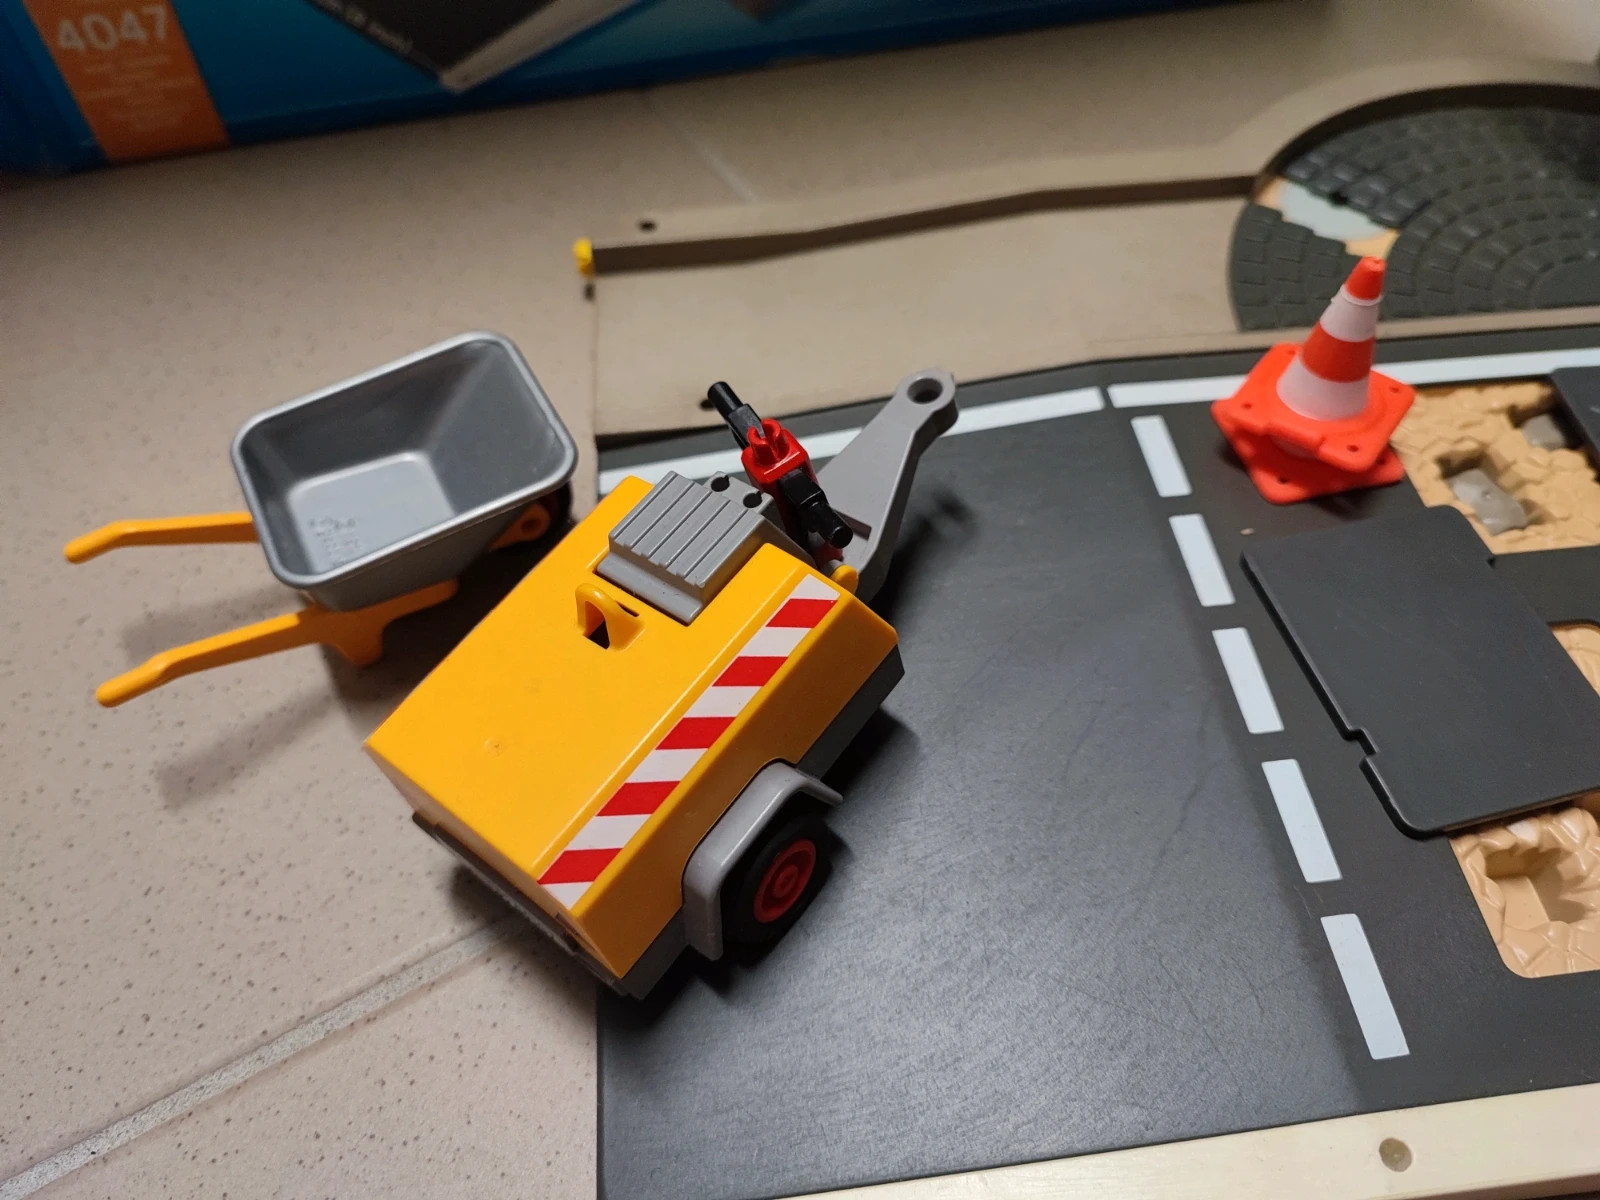 Playmobil City Action 4047 pas cher, Ouvriers et entretien de route